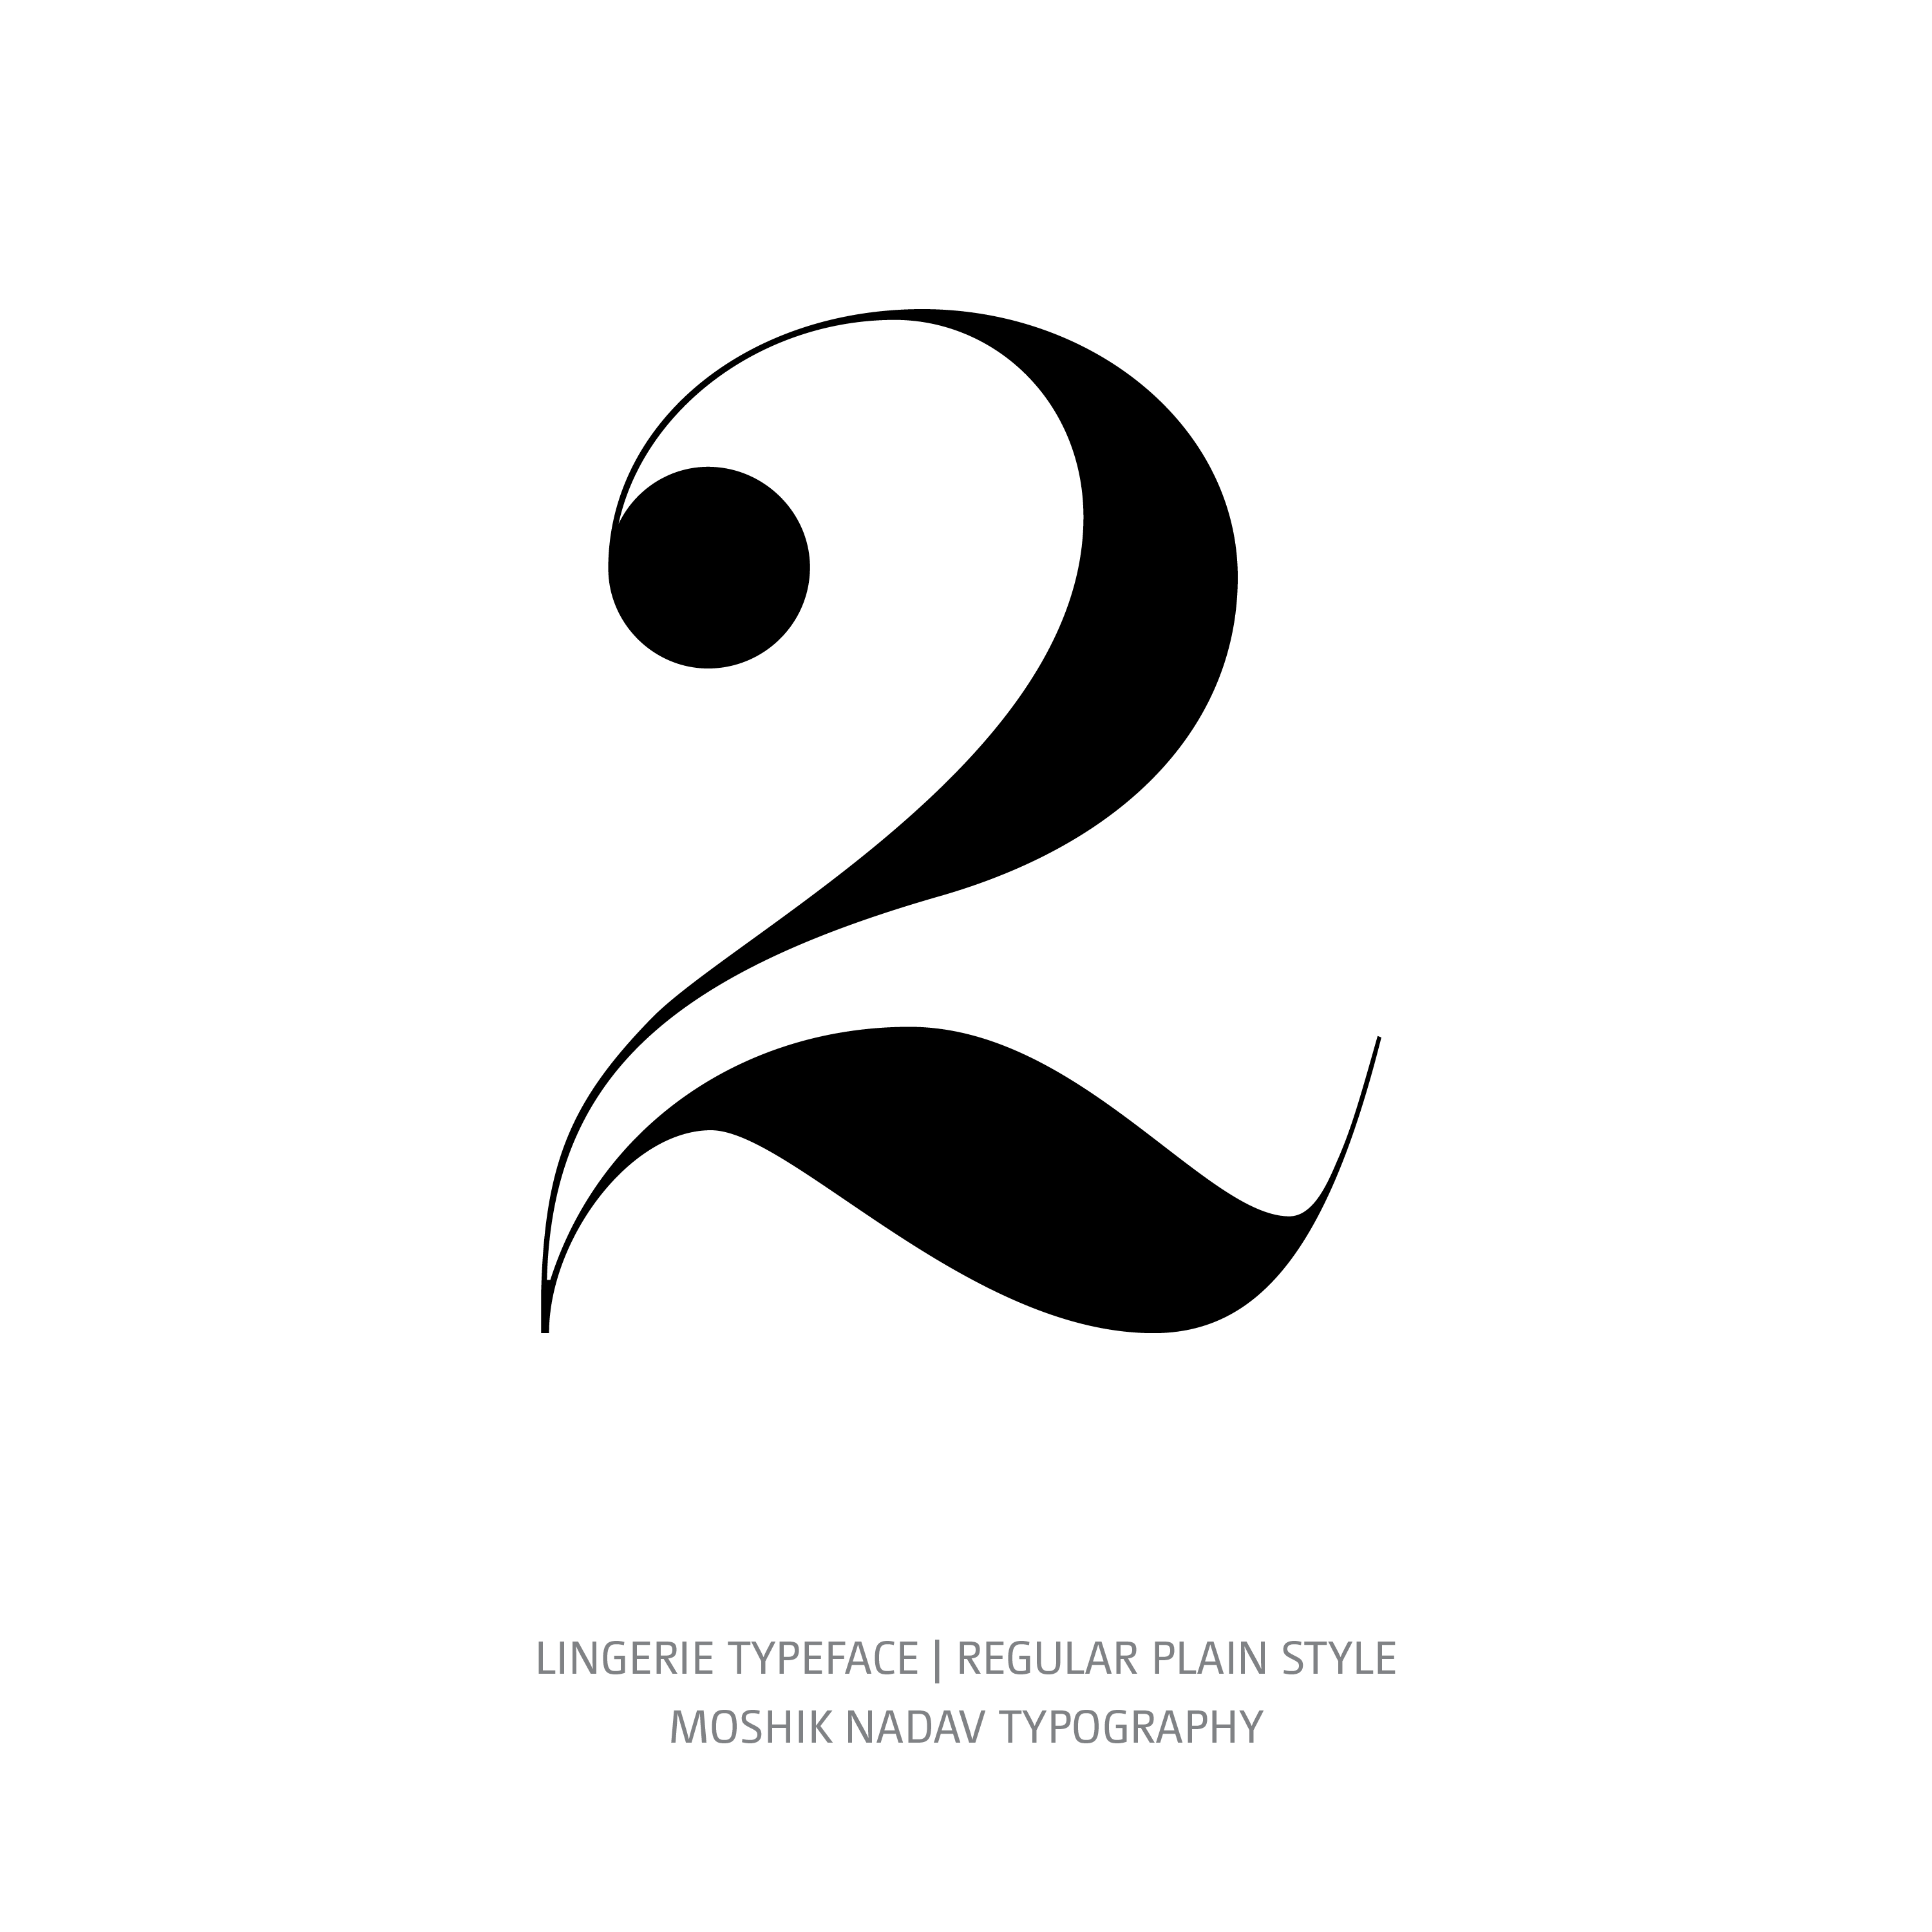 Lingerie Typeface Regular Plain 2